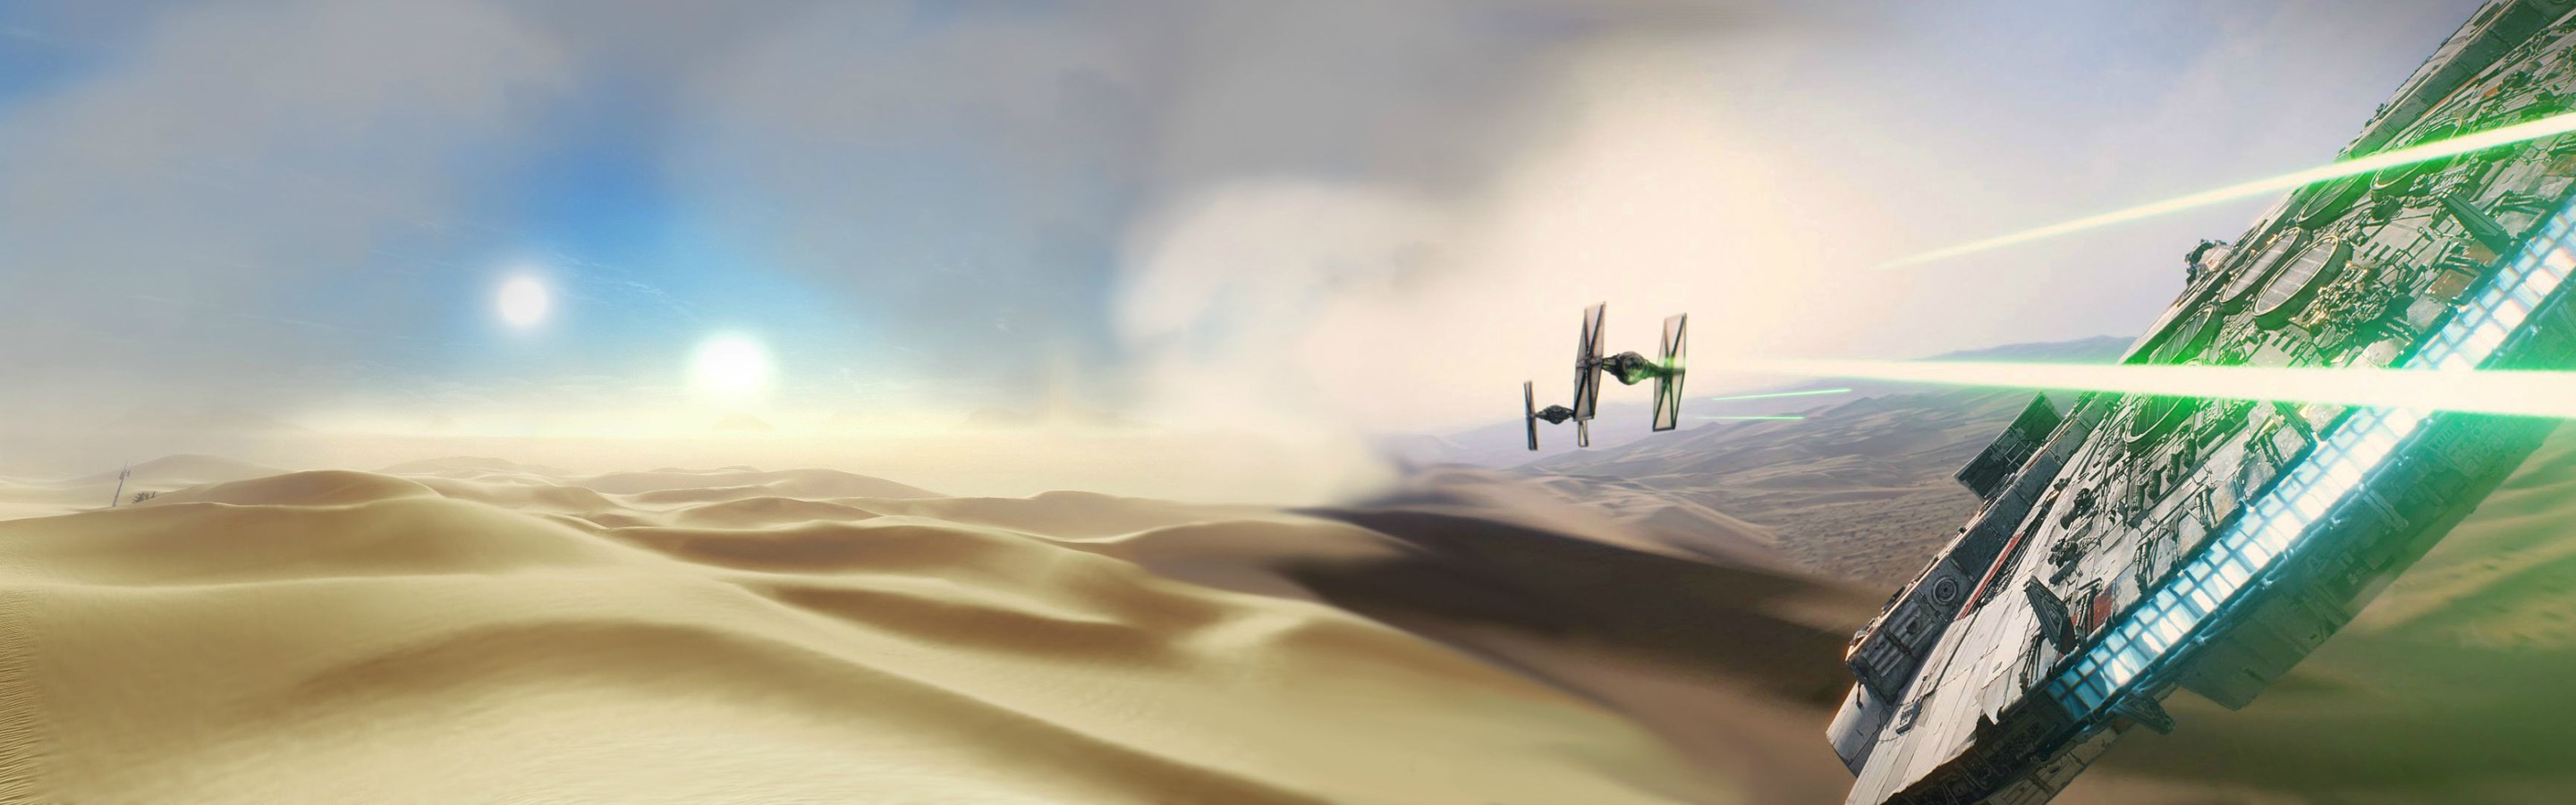 hintergrundbild mit zwei monitoren,wüste,himmel,landschaft,sand,bildschirmfoto